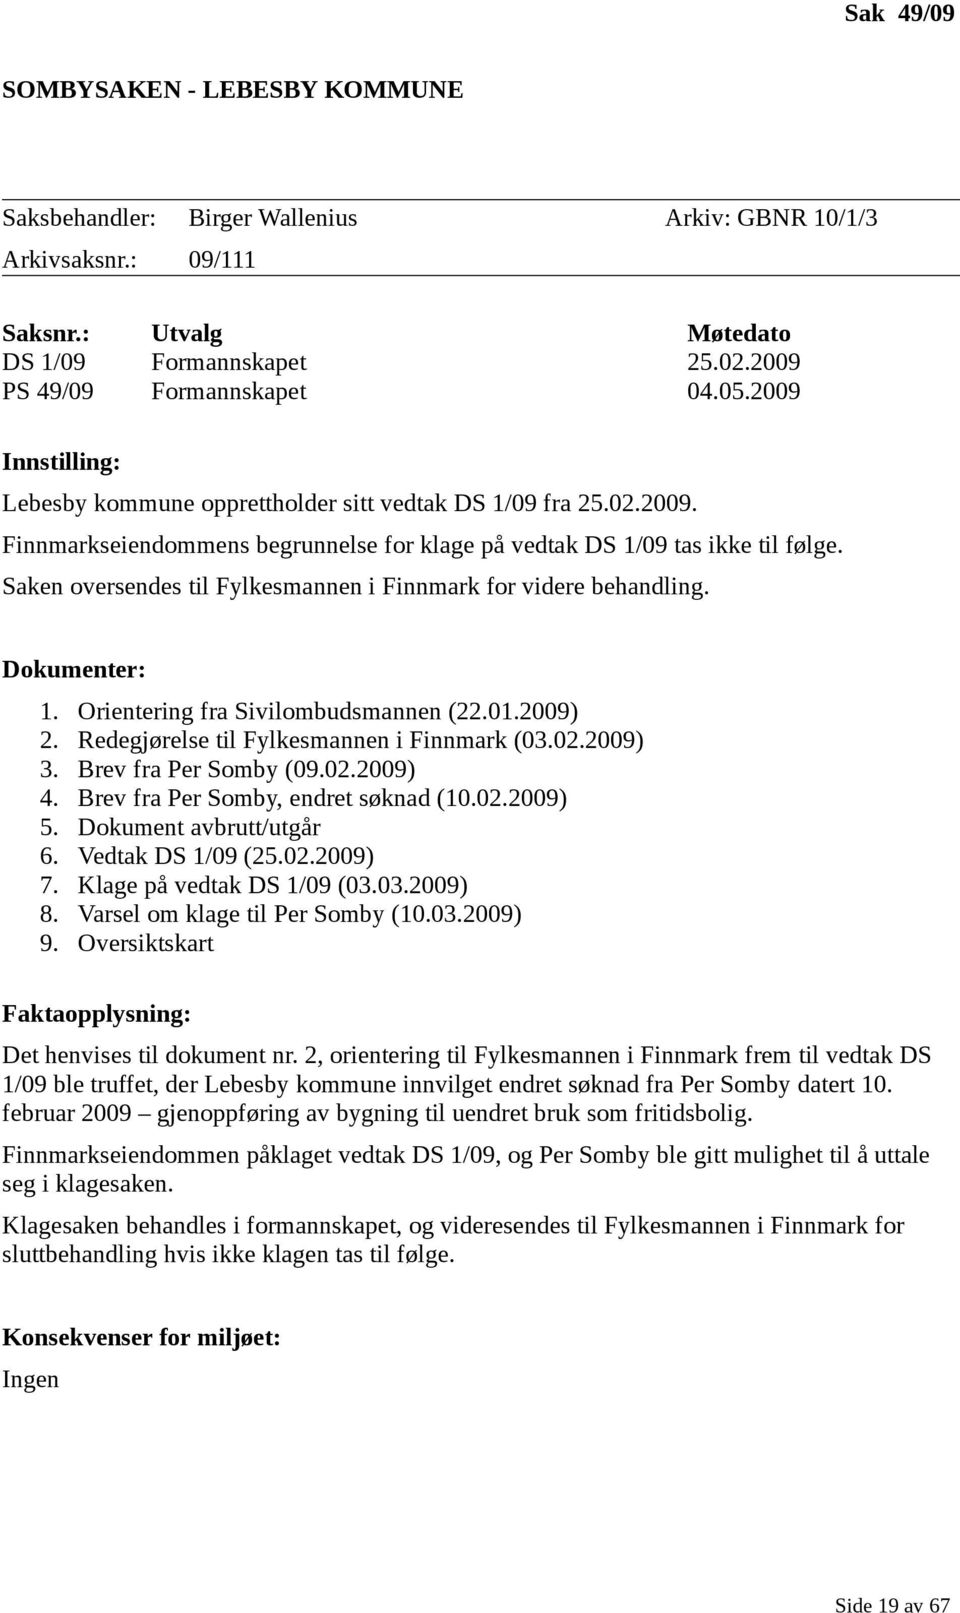 Saken oversendes til Fylkesmannen i Finnmark for videre behandling. Dokumenter: 1. 2. 3. 4. 5. 6. 7. 8. 9. Orientering fra Sivilombudsmannen (22.01.2009) Redegjørelse til Fylkesmannen i Finnmark (03.